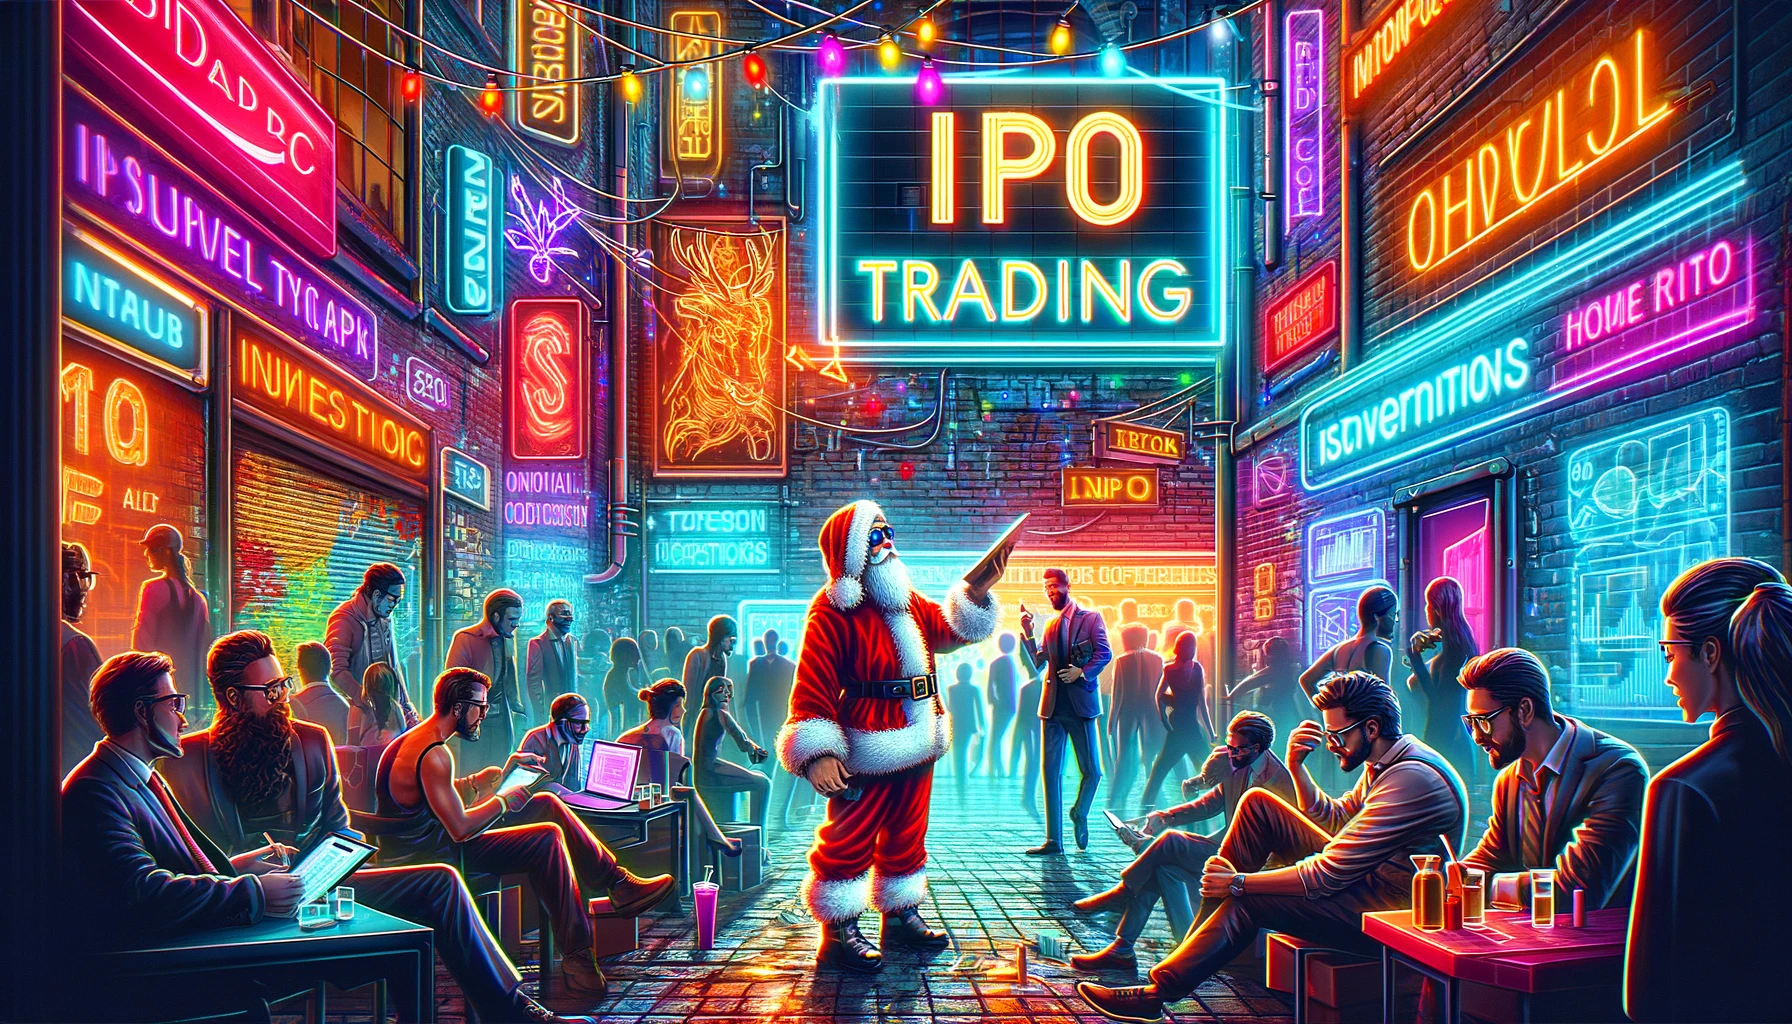 Navegando por el rumor de las IPO en el universo comercial